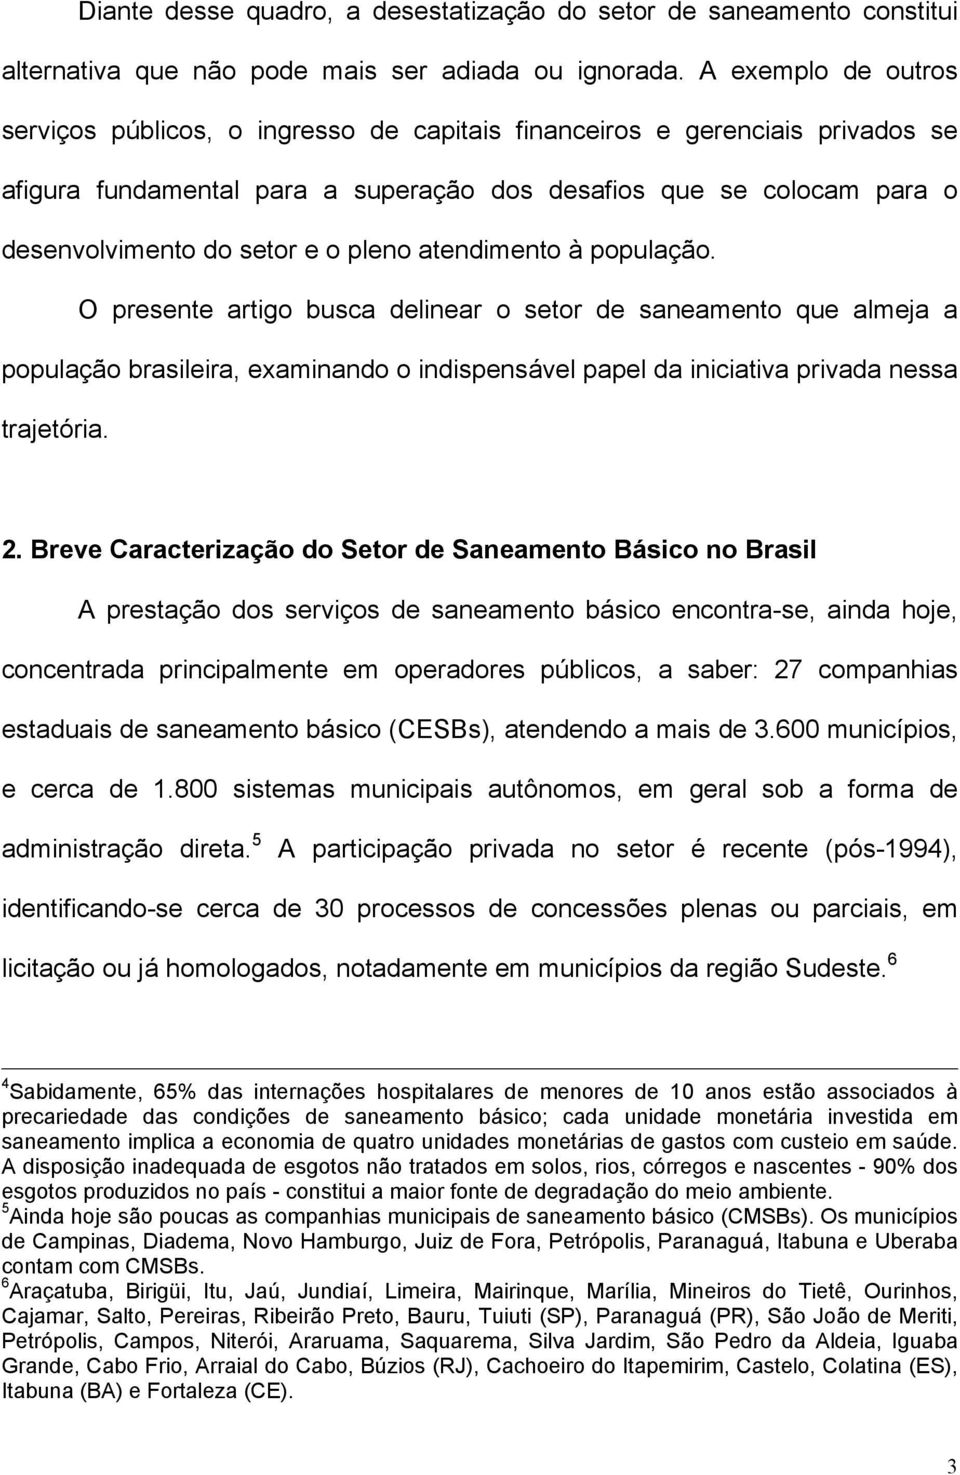 pleno atendimento à população. O presente artigo busca delinear o setor de saneamento que almeja a população brasileira, examinando o indispensável papel da iniciativa privada nessa trajetória. 2.